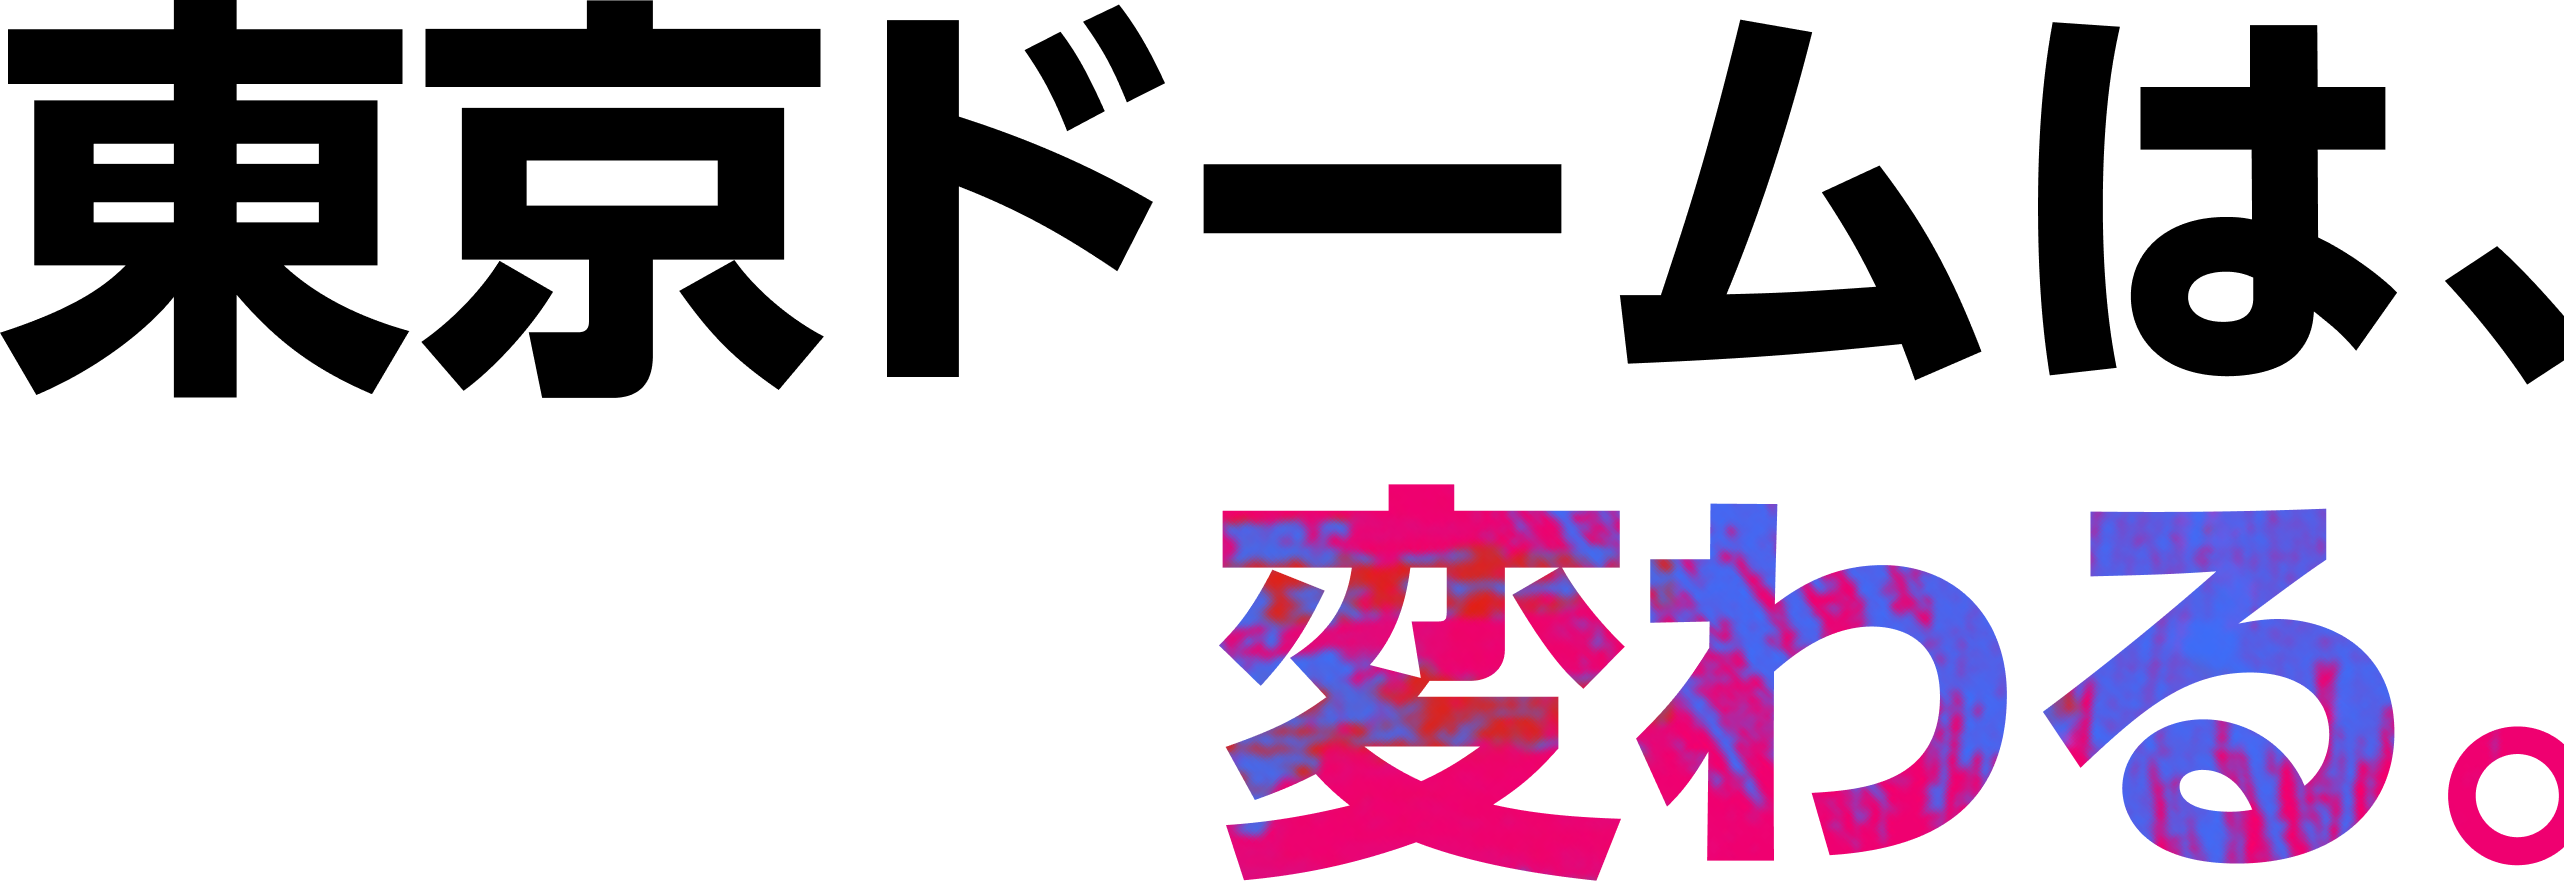 Web3.0×エンターテイメント 東京ドームは、変わる。